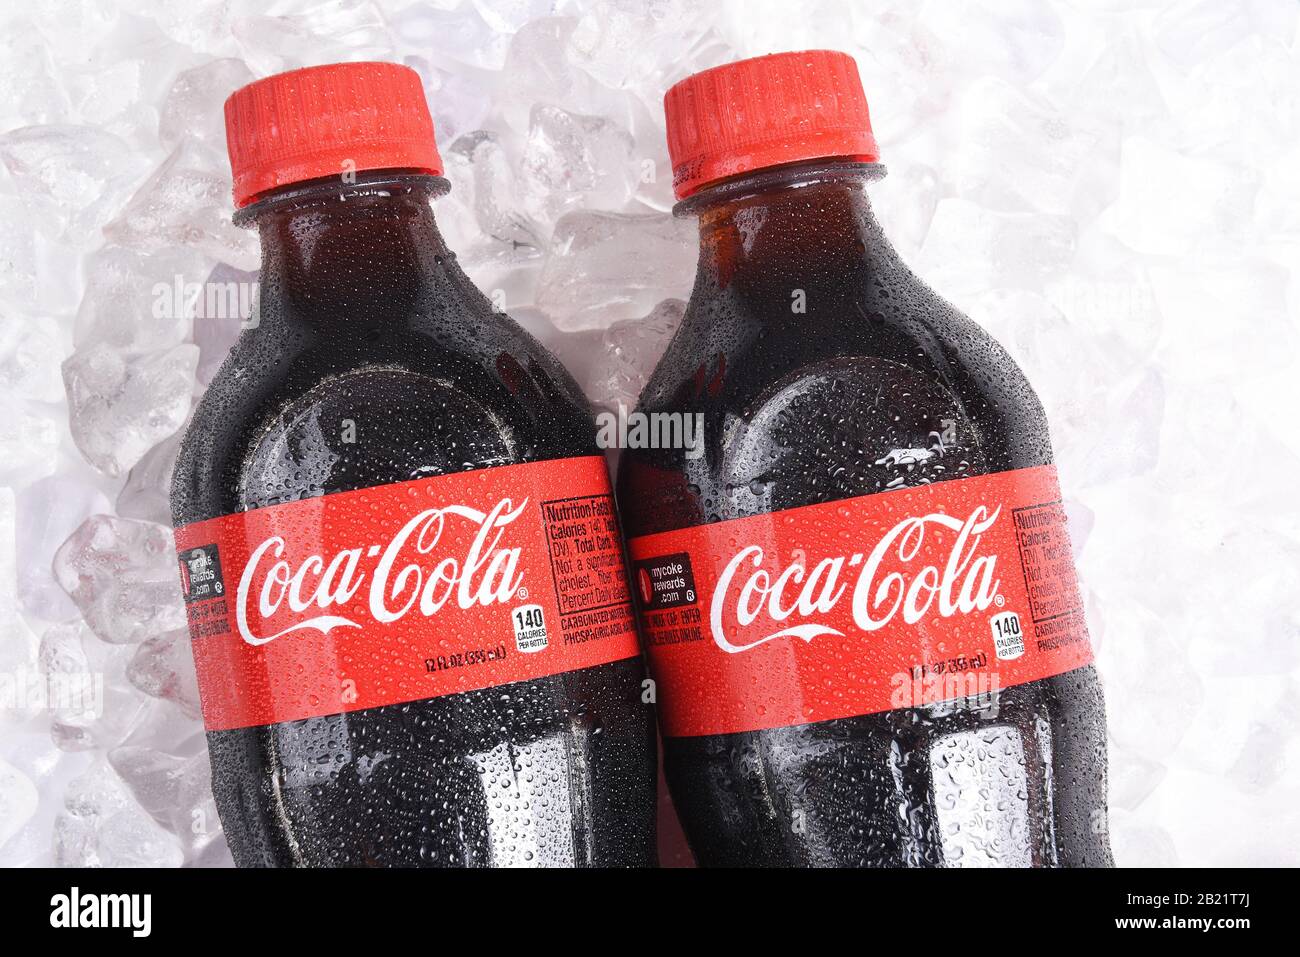 Irvine, CALIFORNIA - 22 gennaio 2017: Due bottiglie di Coca-Cola su ghiaccio. Coca-Cola è una delle bevande gassate preferite al mondo. Foto Stock